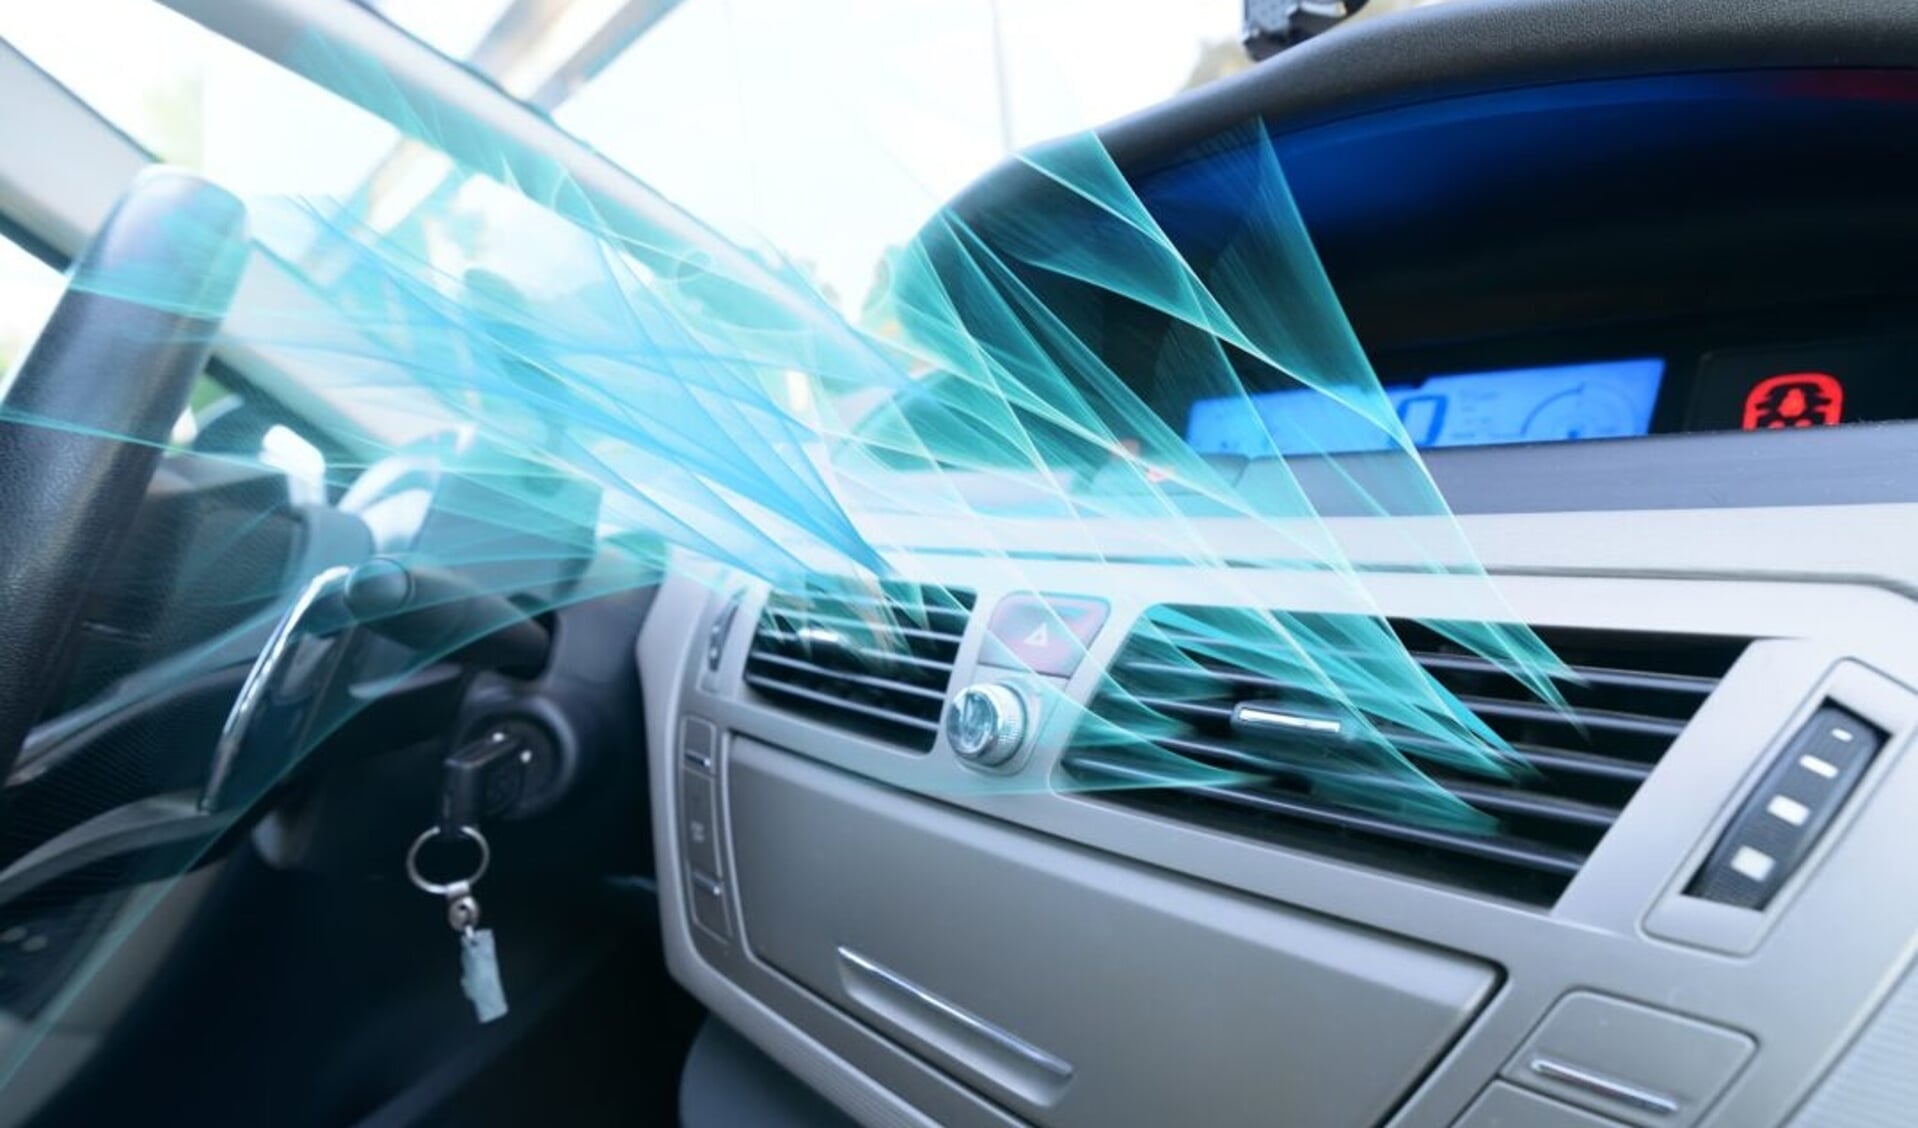 Frisse lucht in de auto is niet alleen prettiger maar ook gezonder. (Foto: PR) 